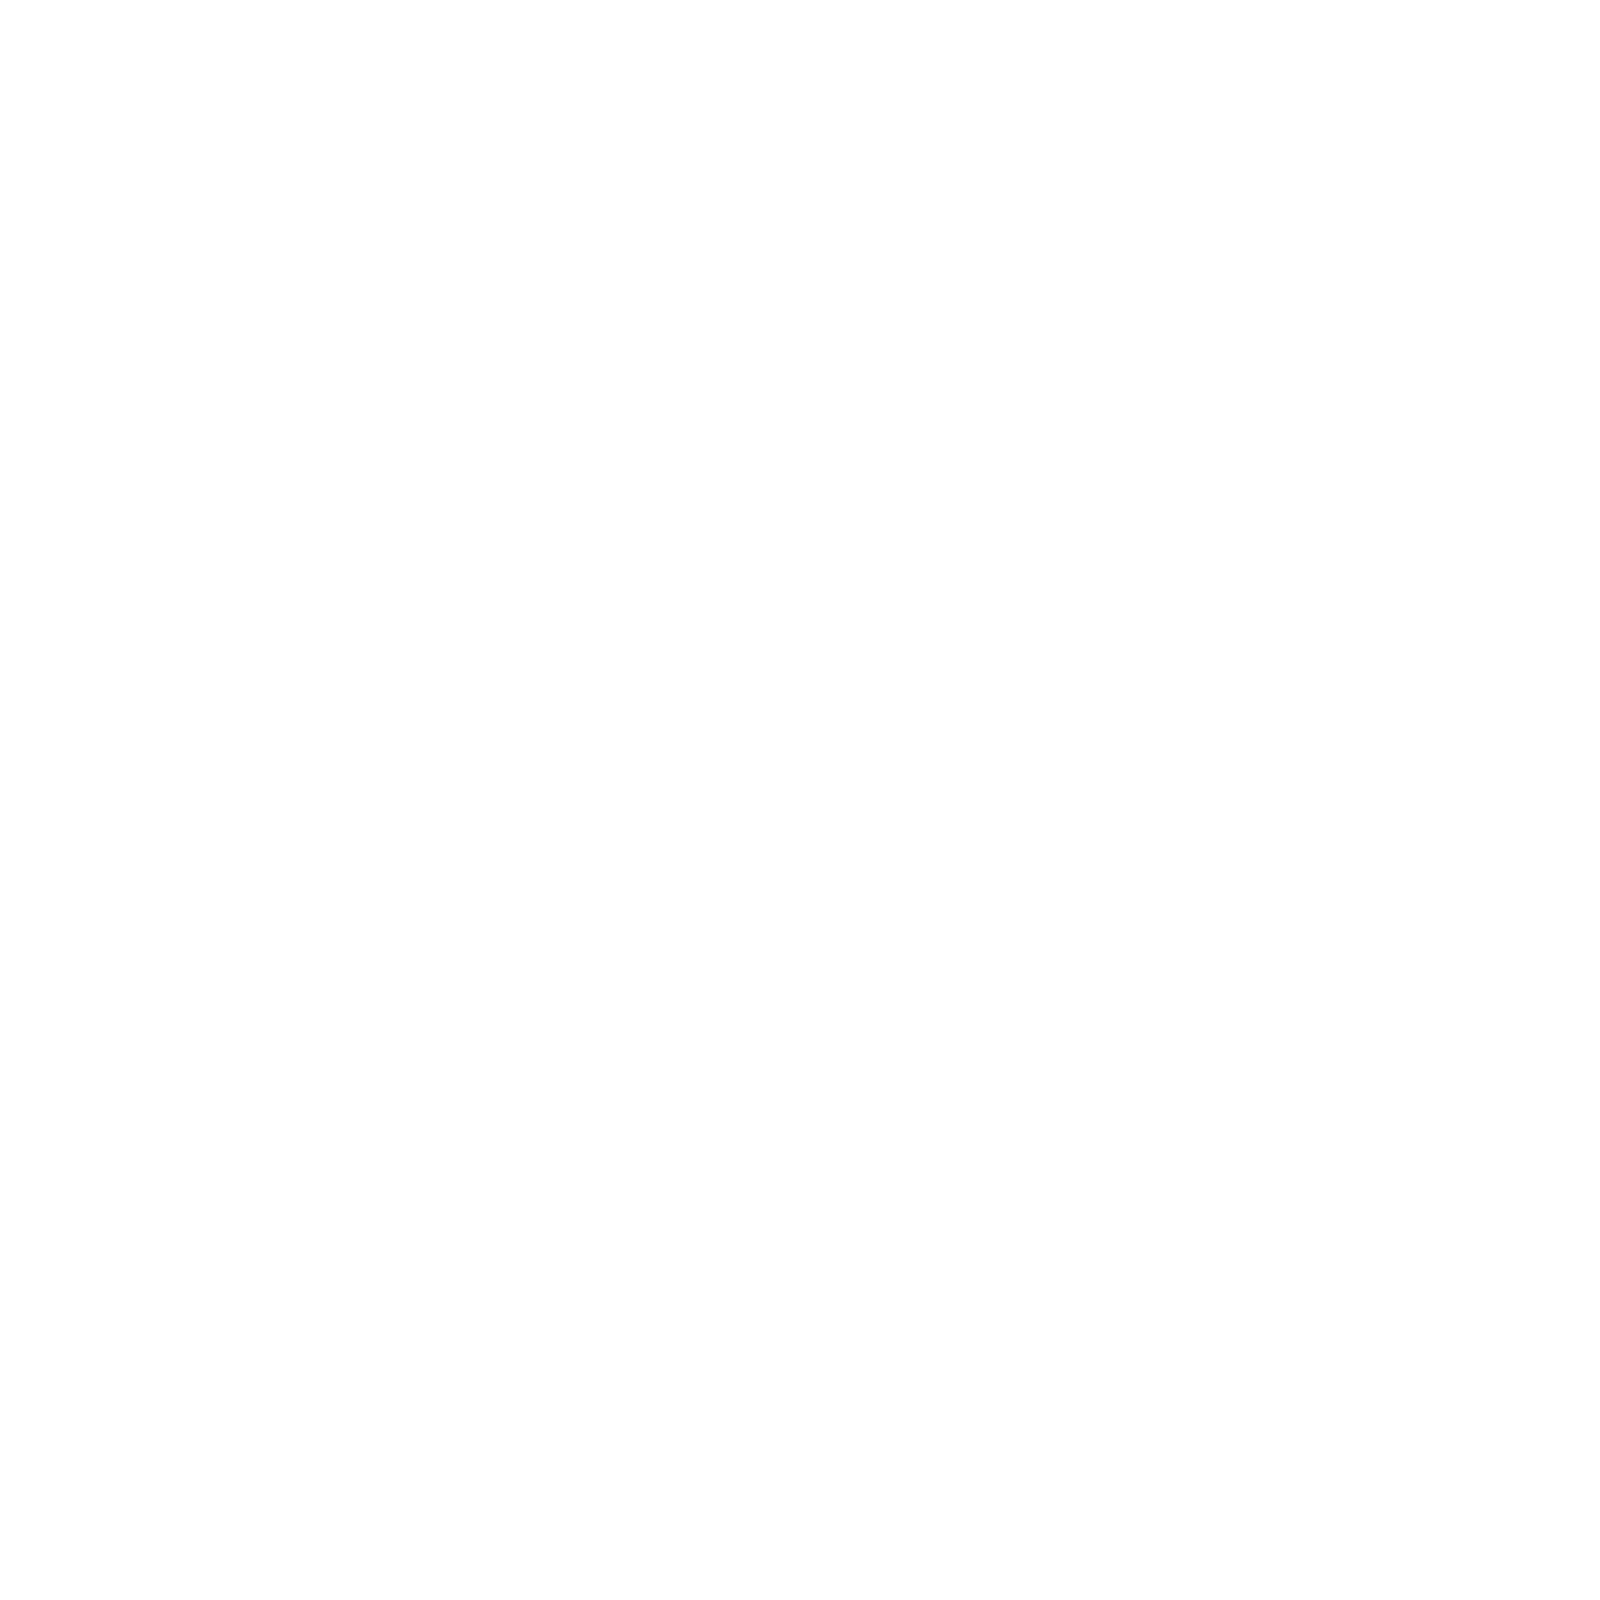 QR Code Symbol sizes